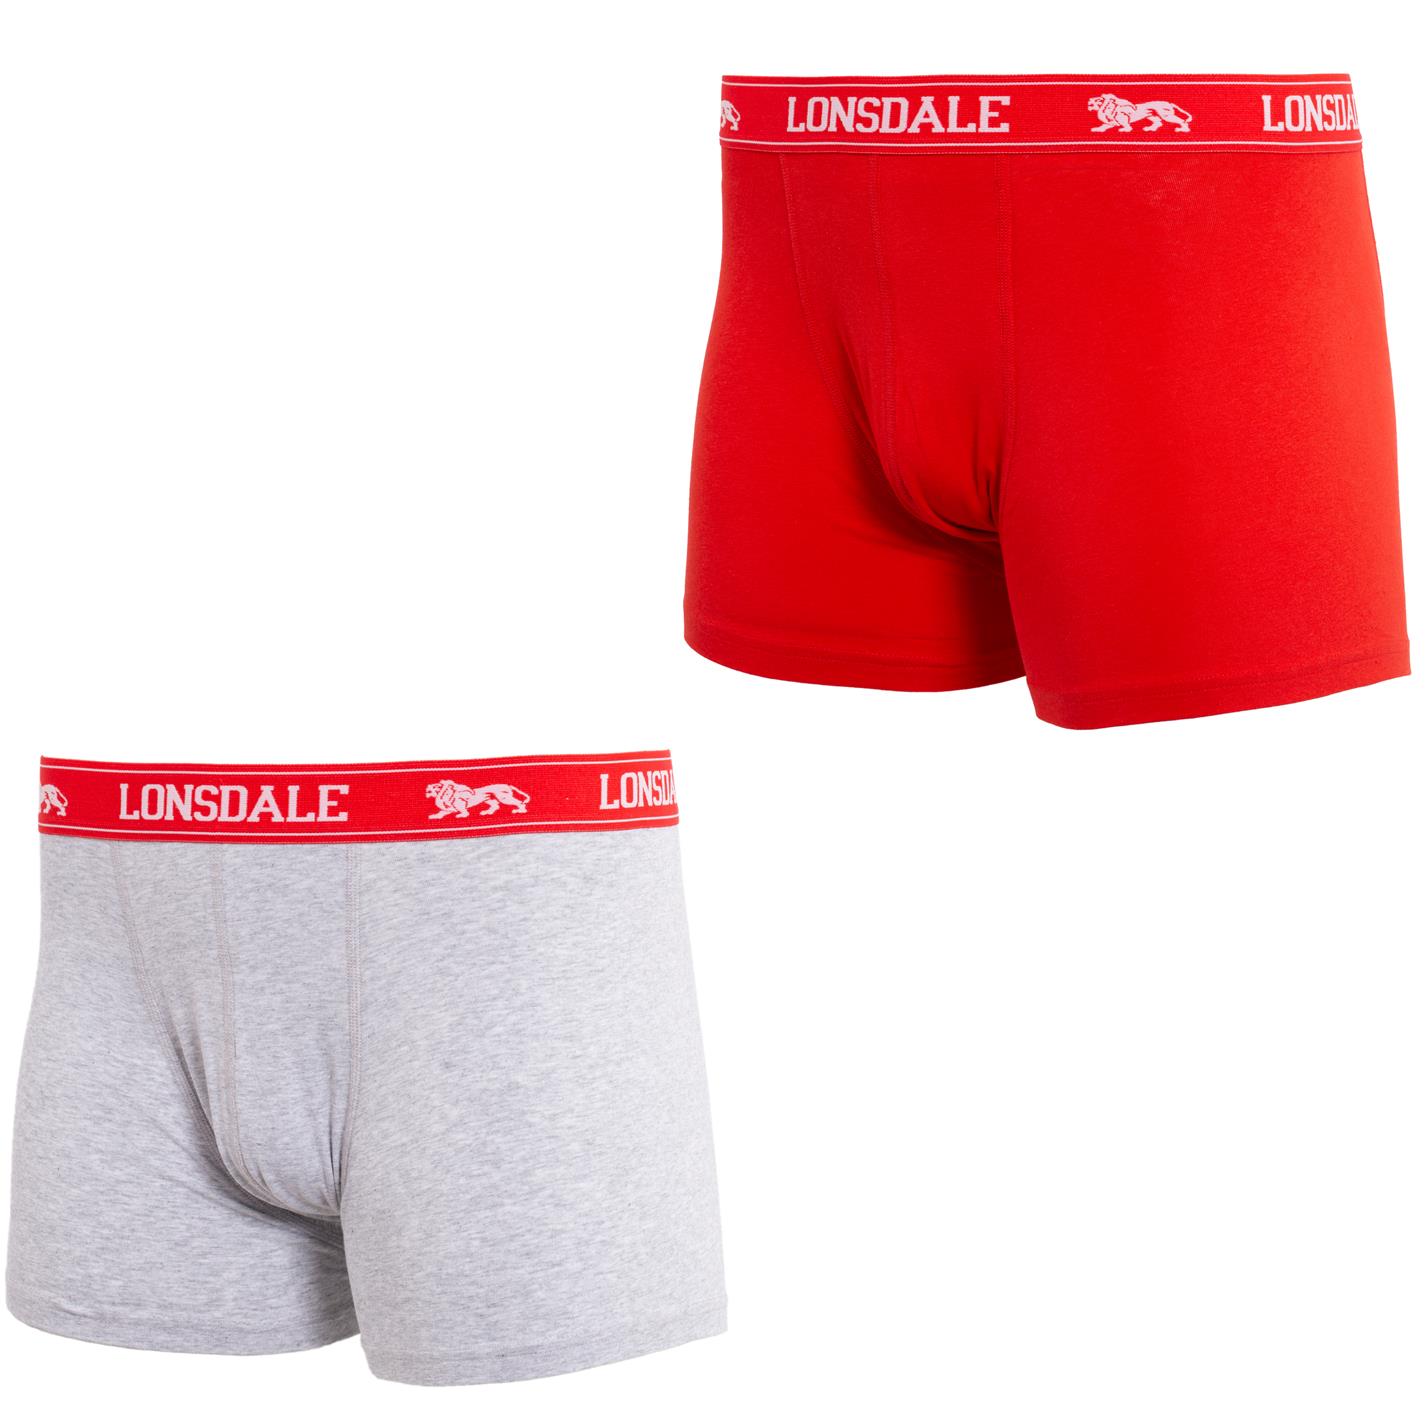 pánské boxerky LONSDALE - RED/GREY - 2 ks